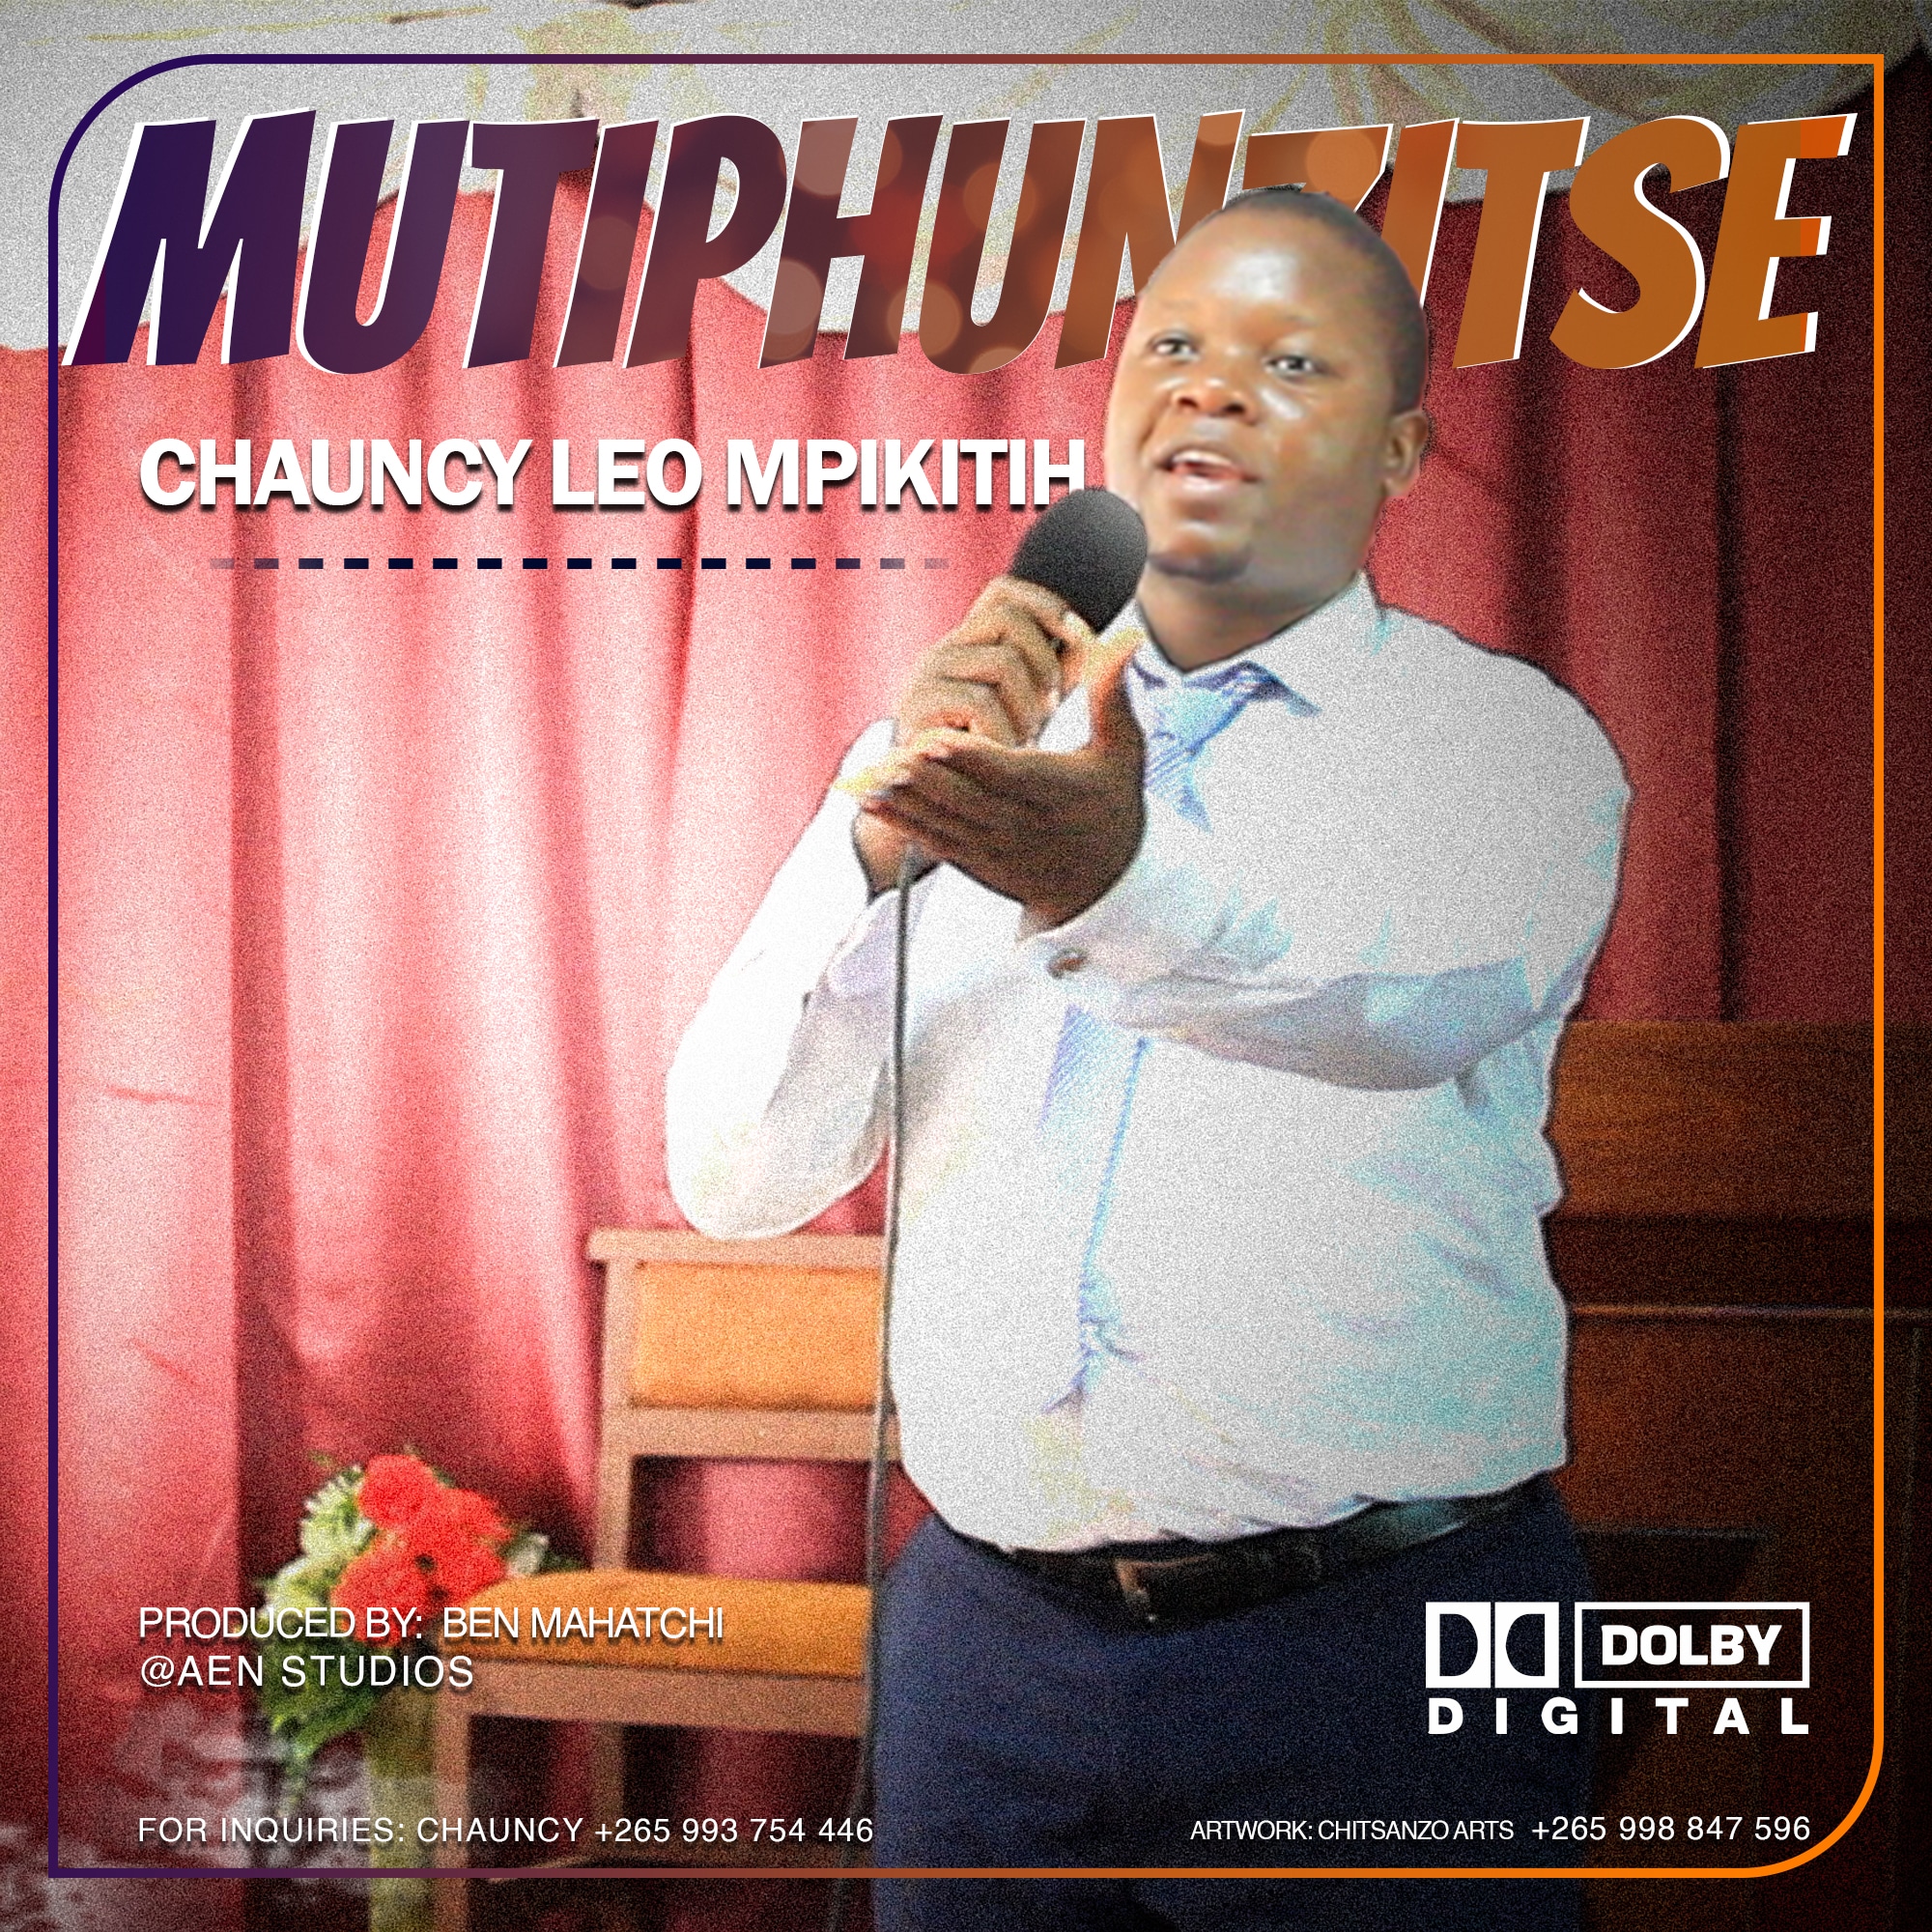  Chauncy-Leo-Mpikitih-Mutiphuzitse